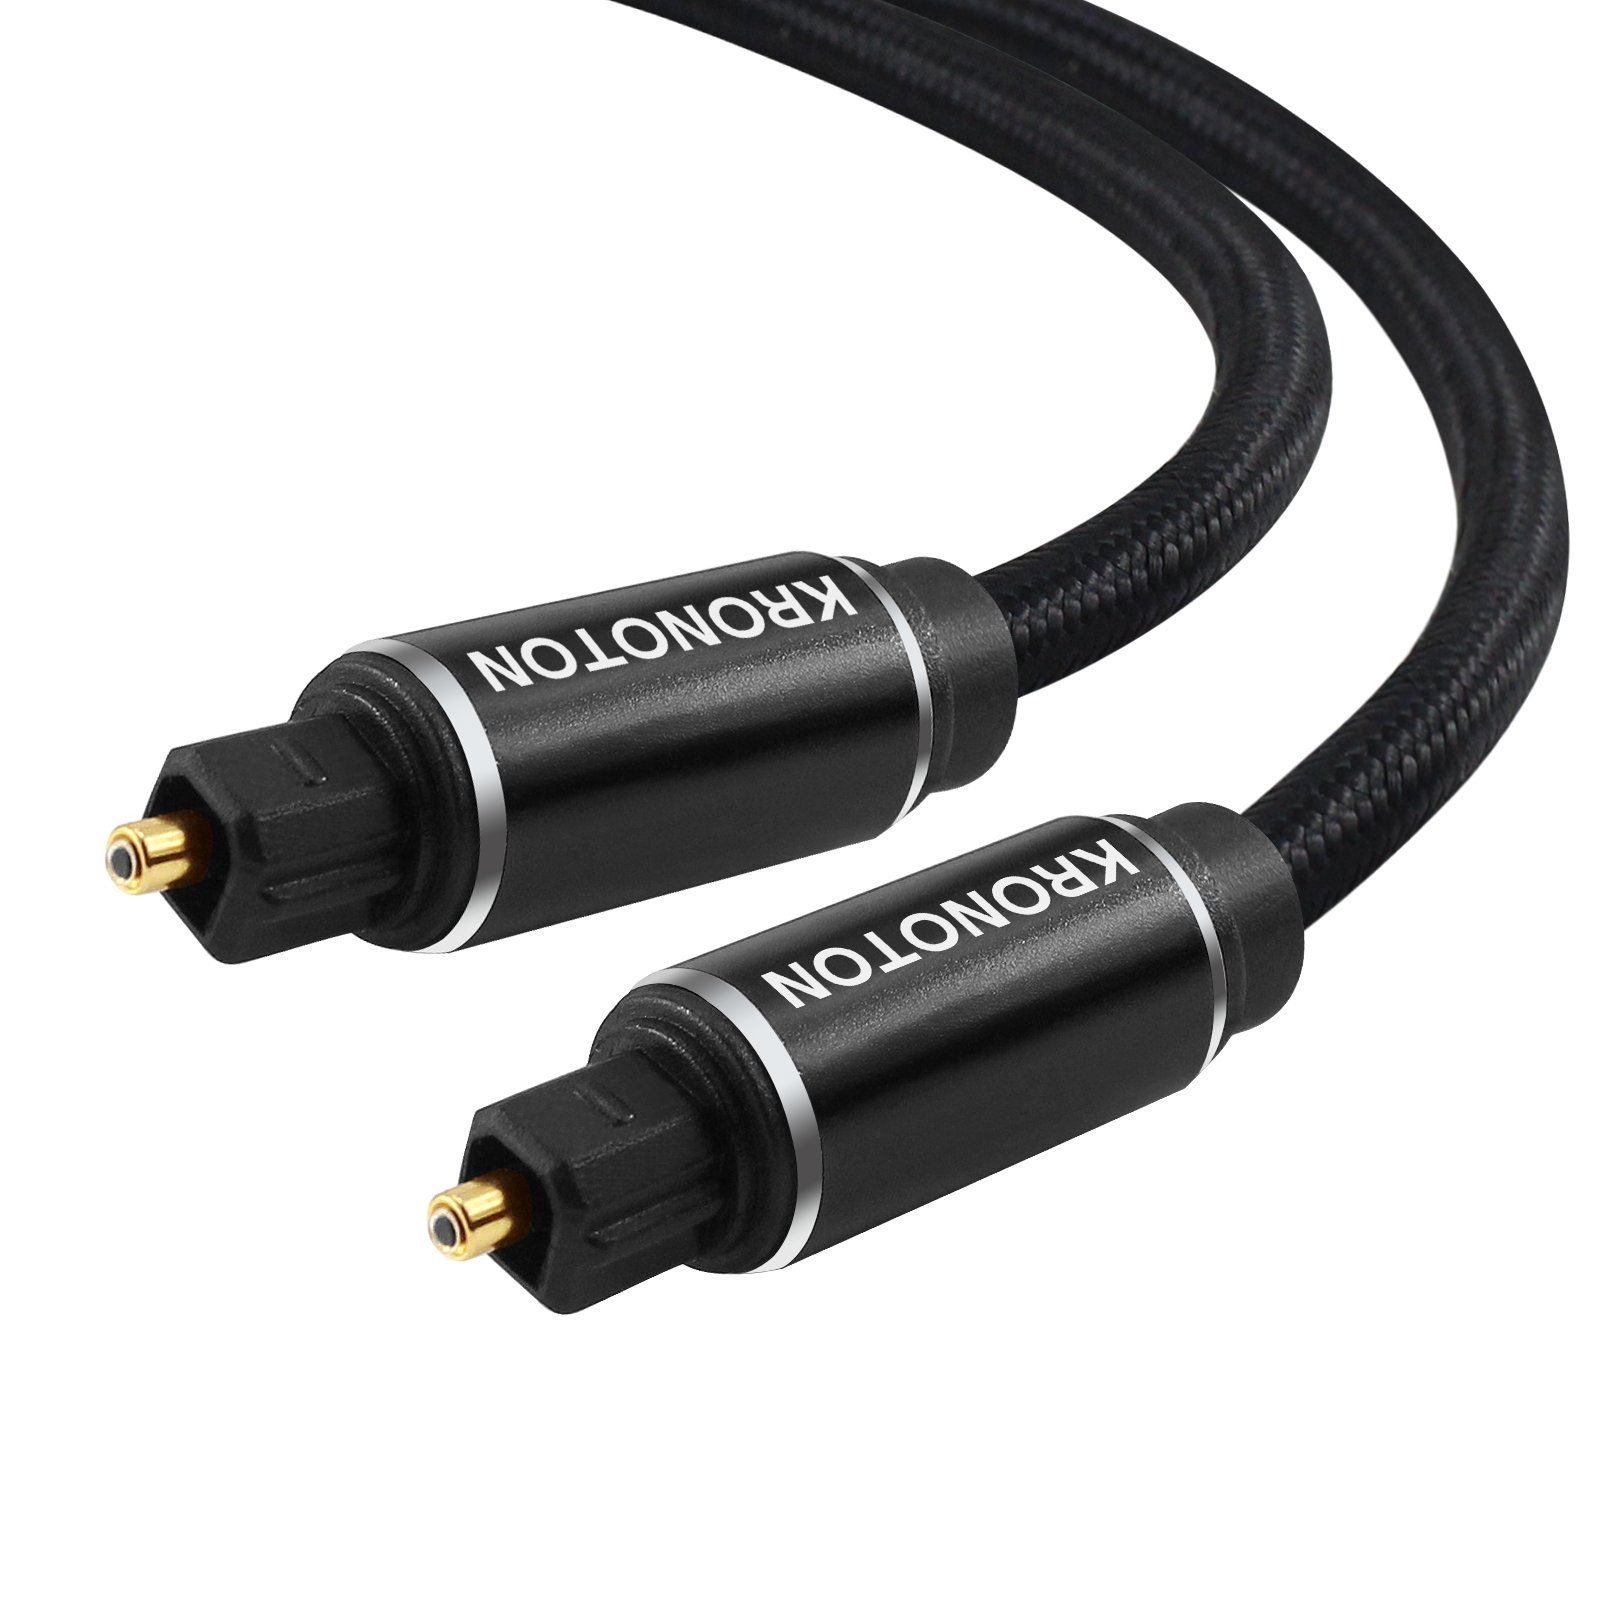 HDSX KRONOTON Premium Toslink Kabel, Länge 1,5m HDSX ZERTIFIZIERT Audio- Kabel, Toslink, (150 cm), Geeignet für alle Audiogeräte mit digital  optischen Toslink Anschlüssen